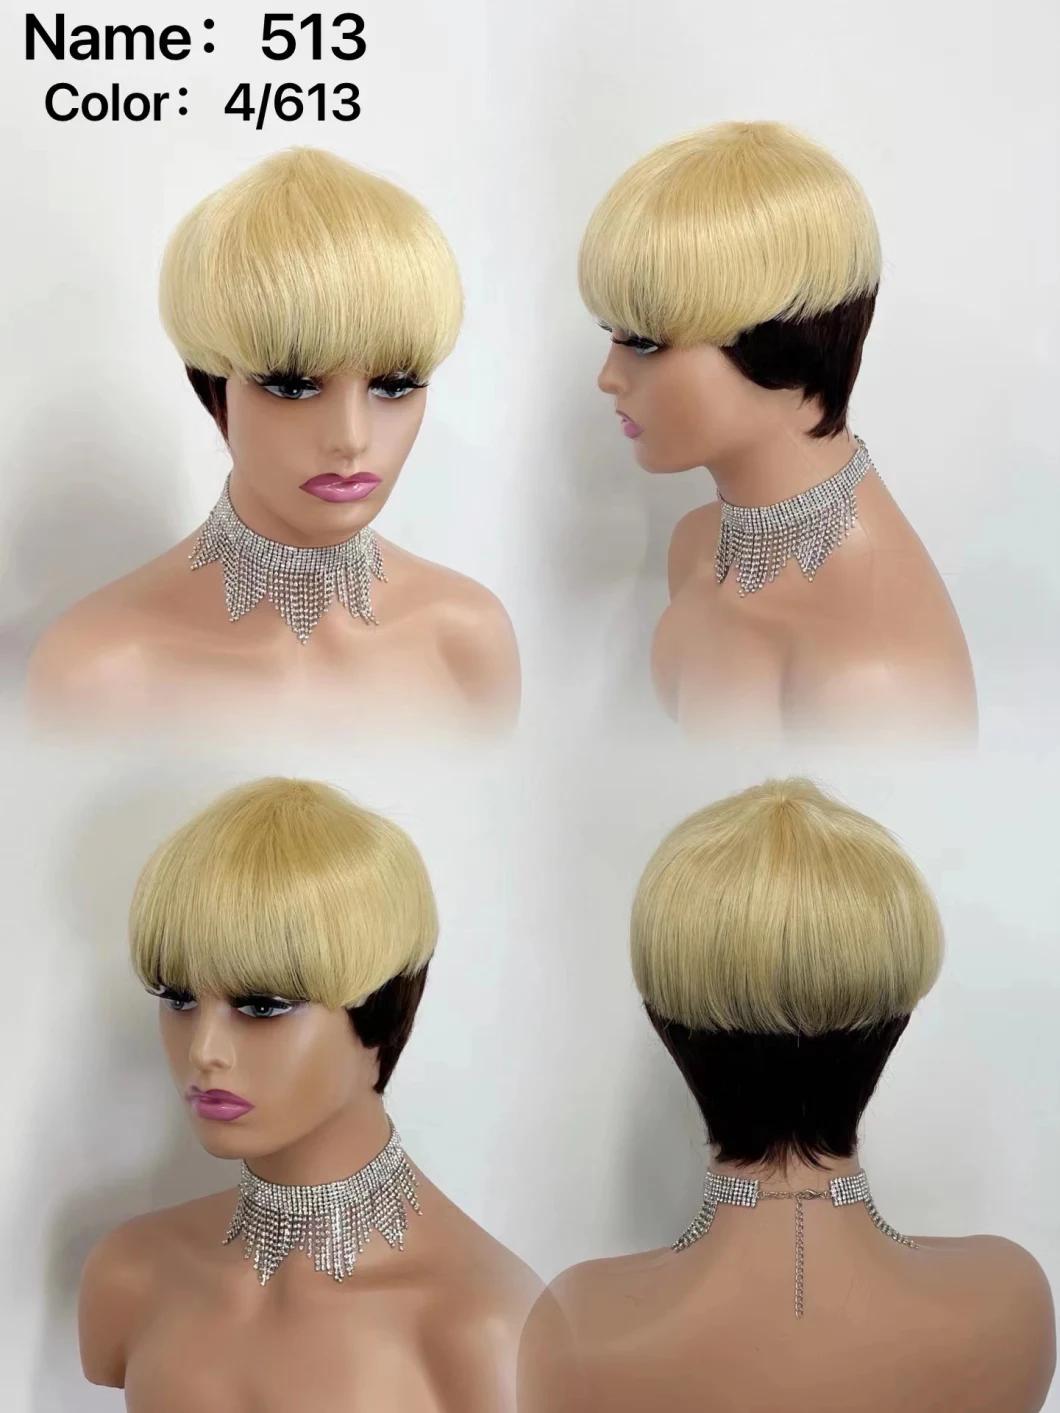 Natural Hair Wigs Human Hair Short Inch Pixie Cut Wig Machine Made Wigs for Black Women